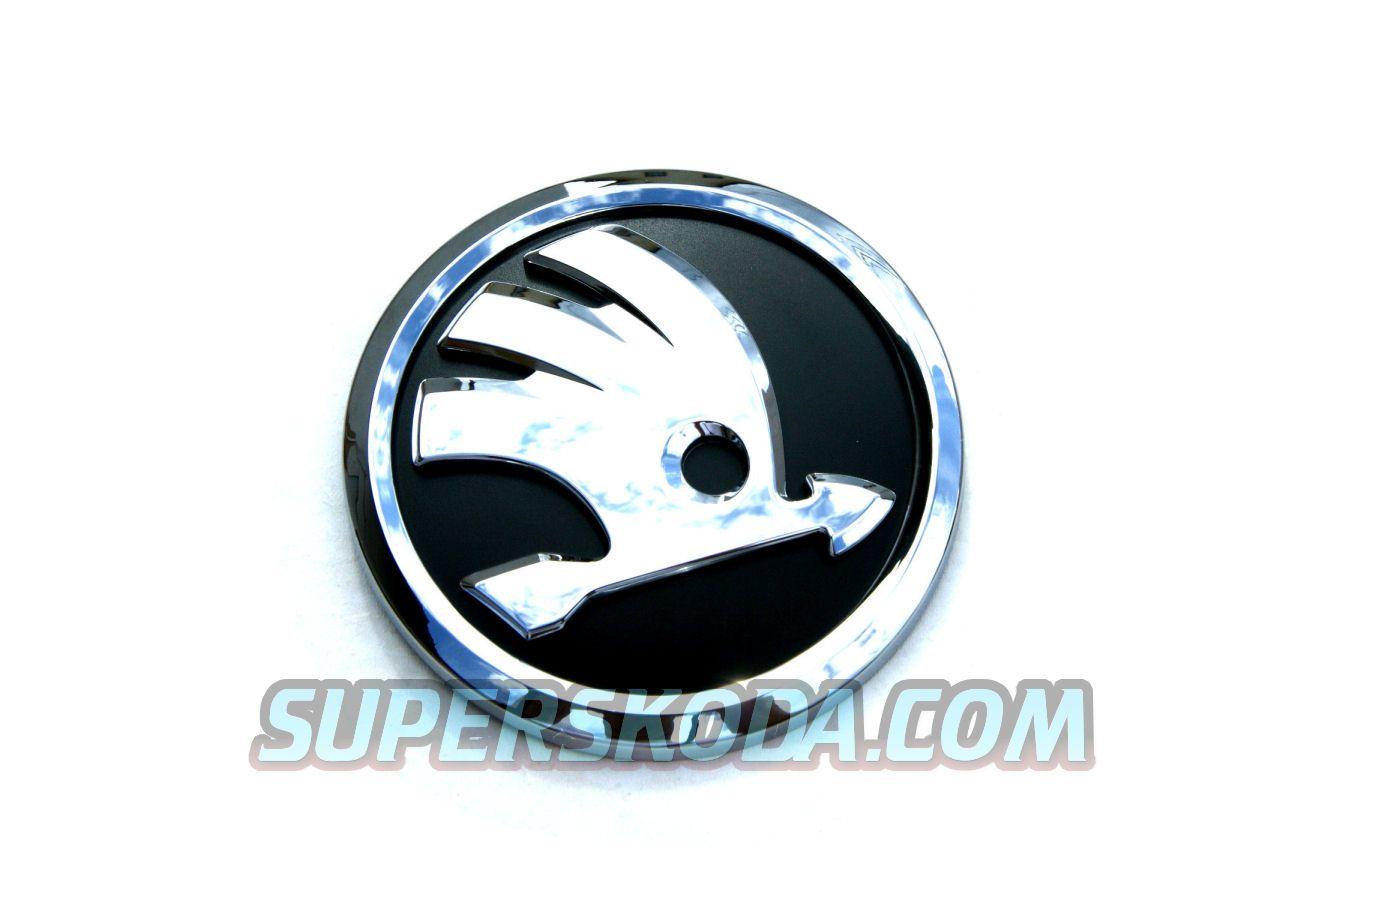 Skoda New Logo - Citigo emblem with new 2012 logo : superskoda.com